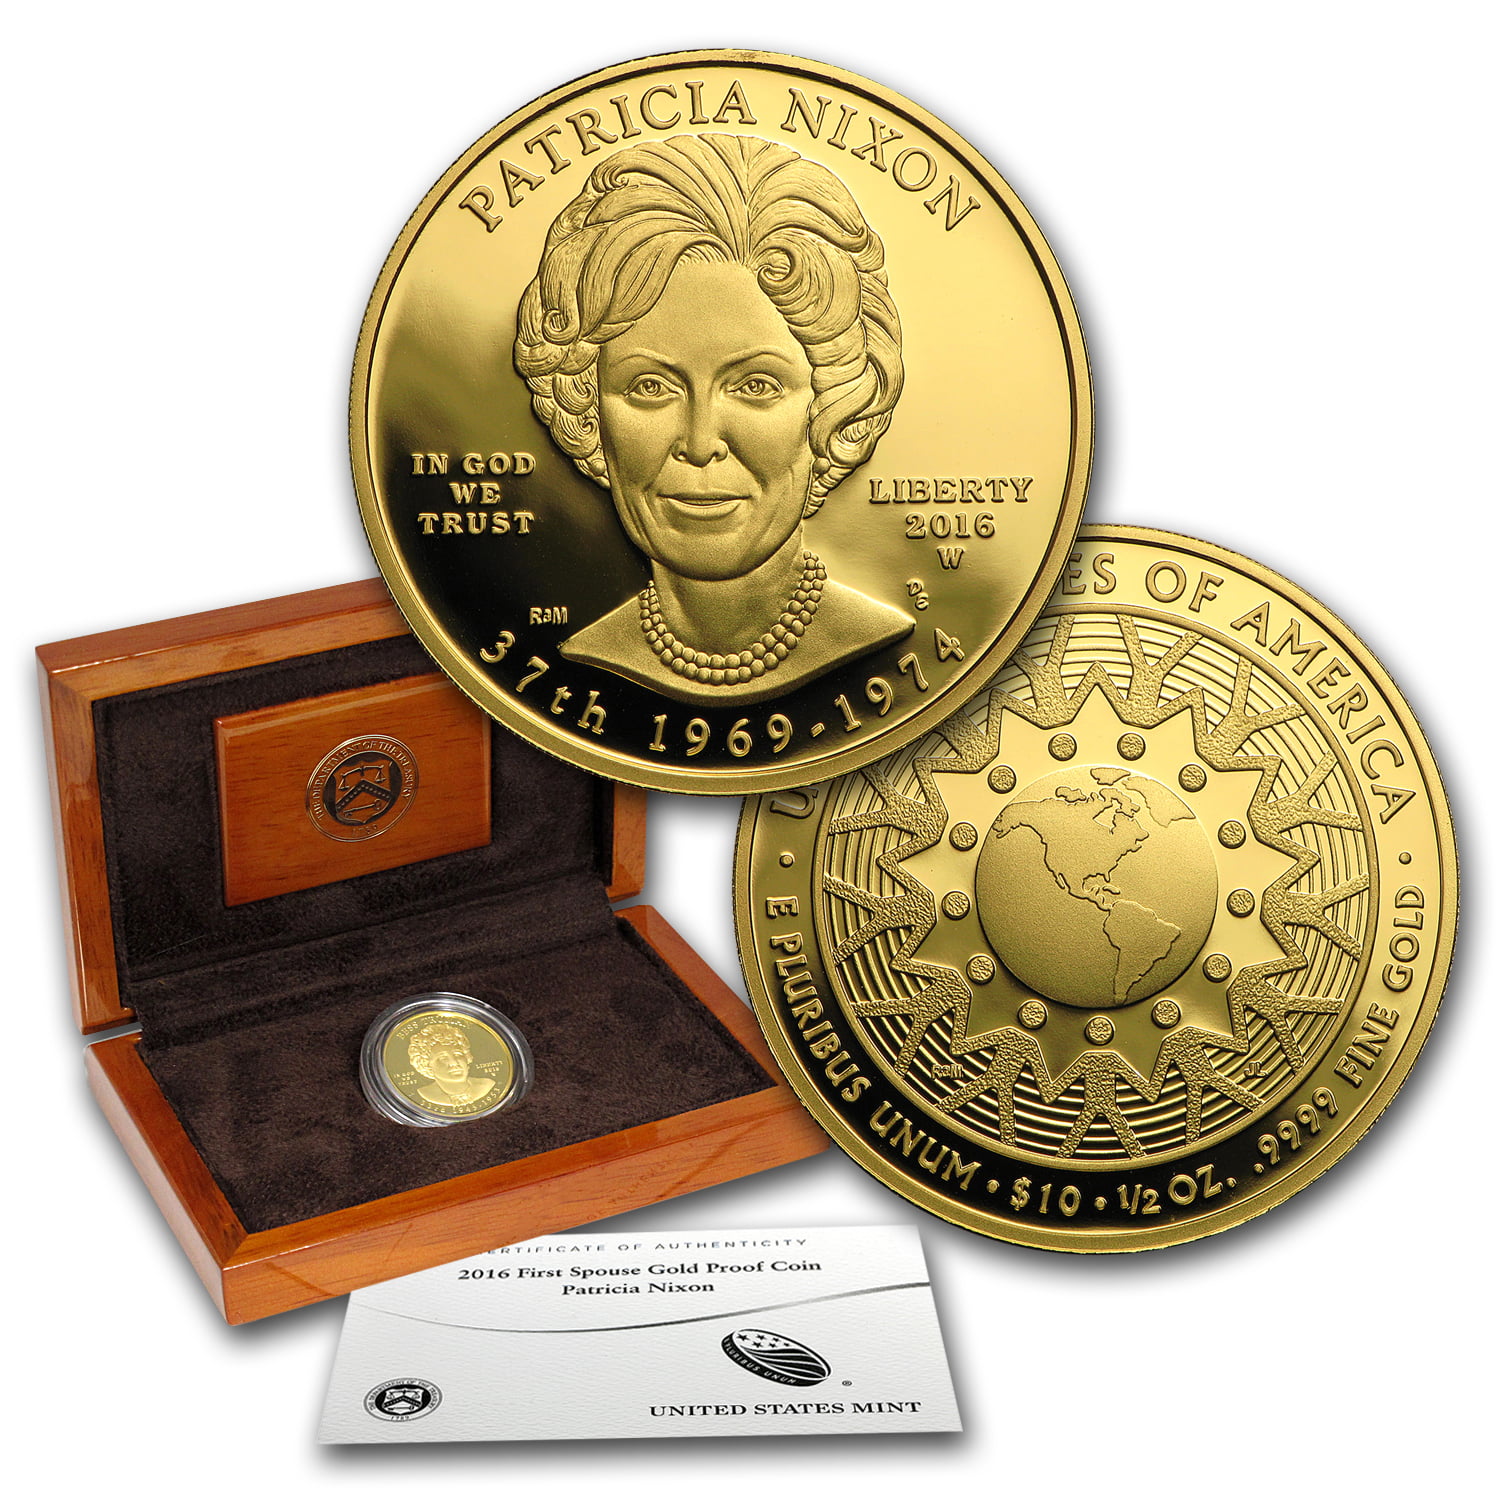 2016-W Proof $10 Gold Patricia Nixon First Spouse Box & COA No Coin 